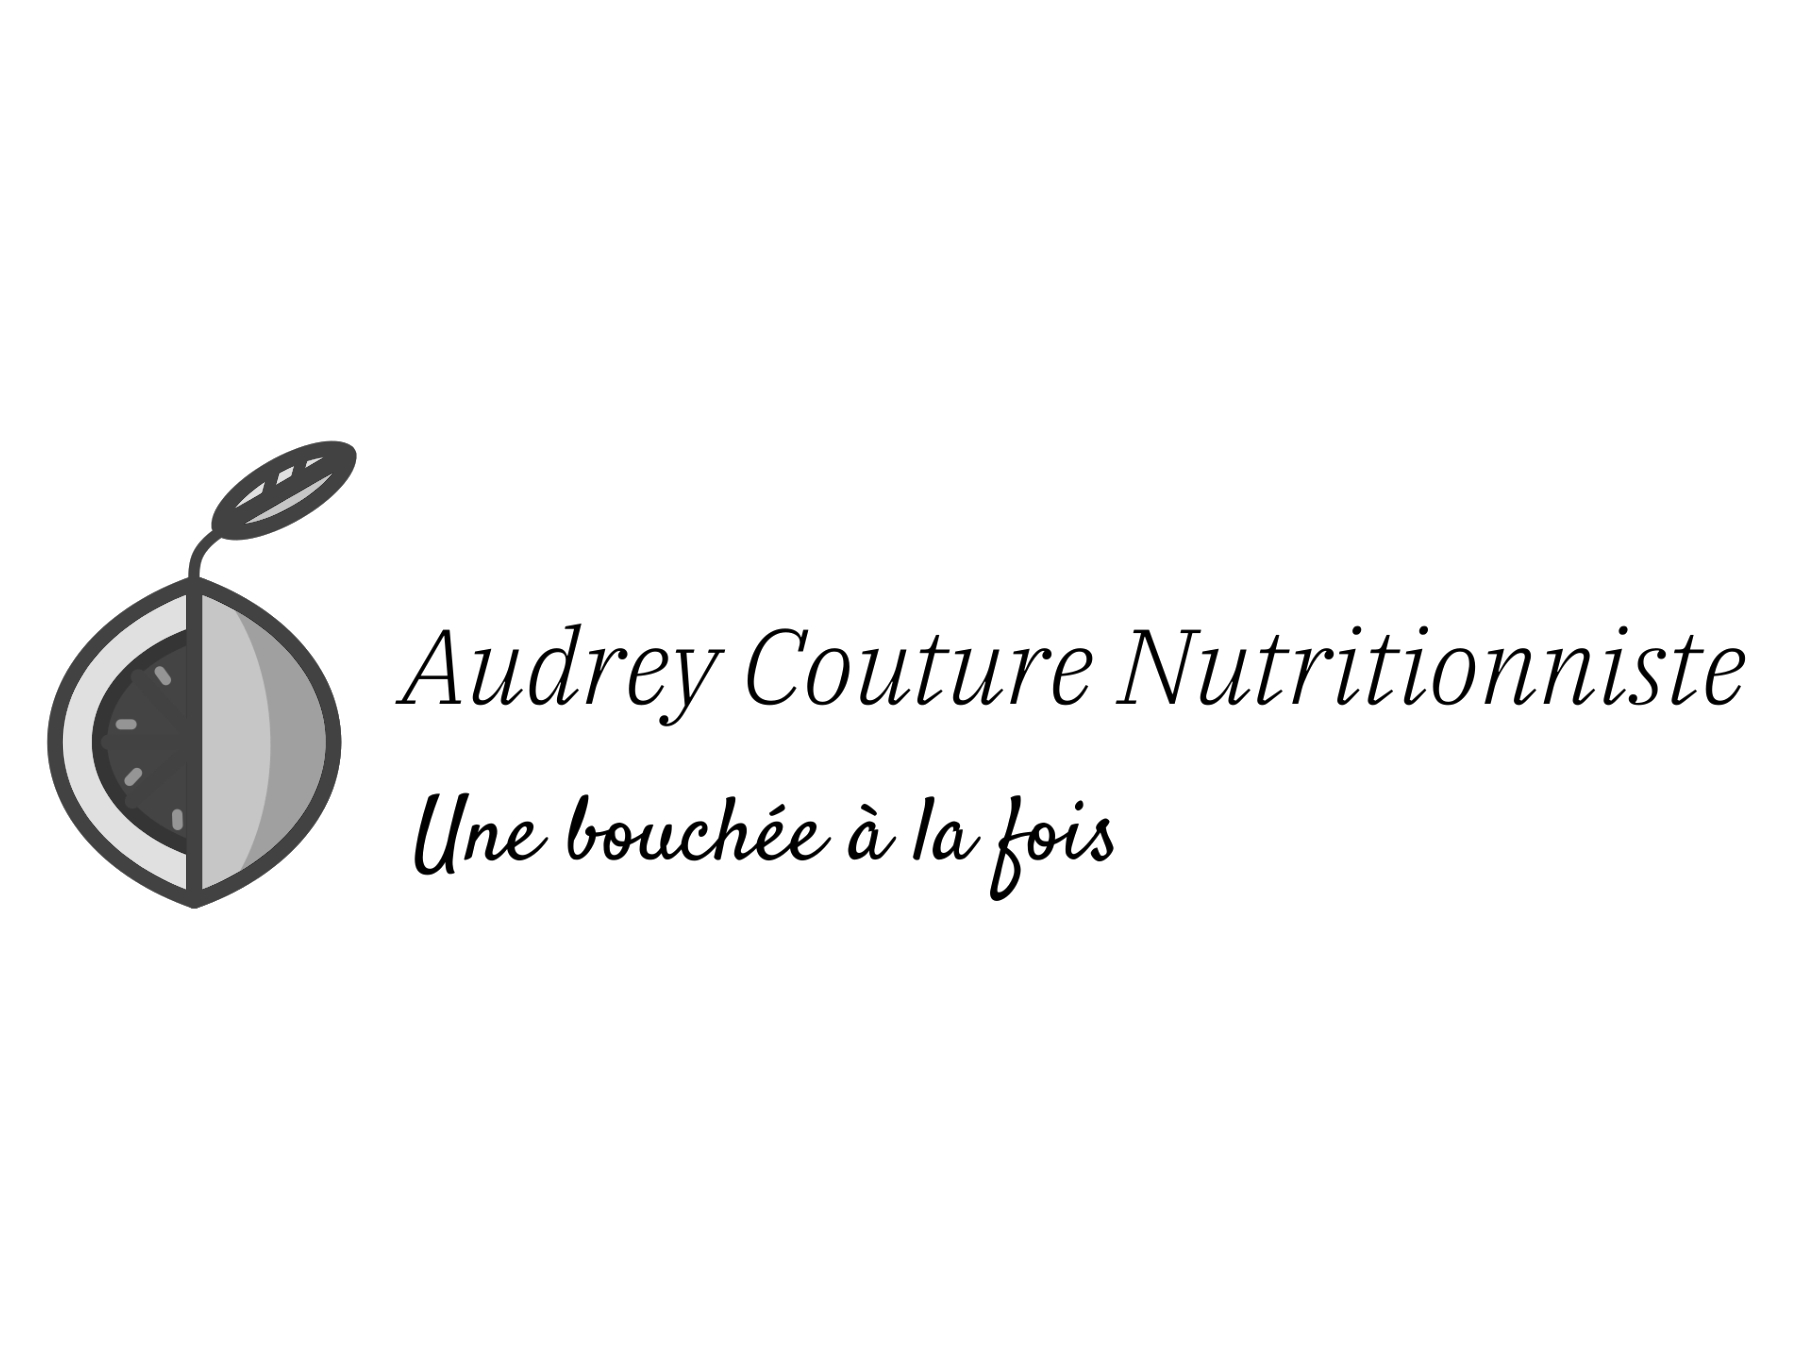 Audrey Couture Nutritionniste font confiance au chiropraticien à Québec Pierre-Marc Beaudoin de la clinique Chiropratique Actif. C'est pourquoi Audrey Couture Nutritionniste est devenue un partenaire de choix avec le chiropraticien Pierre-Marc Beaudoin dans la région de Québec.